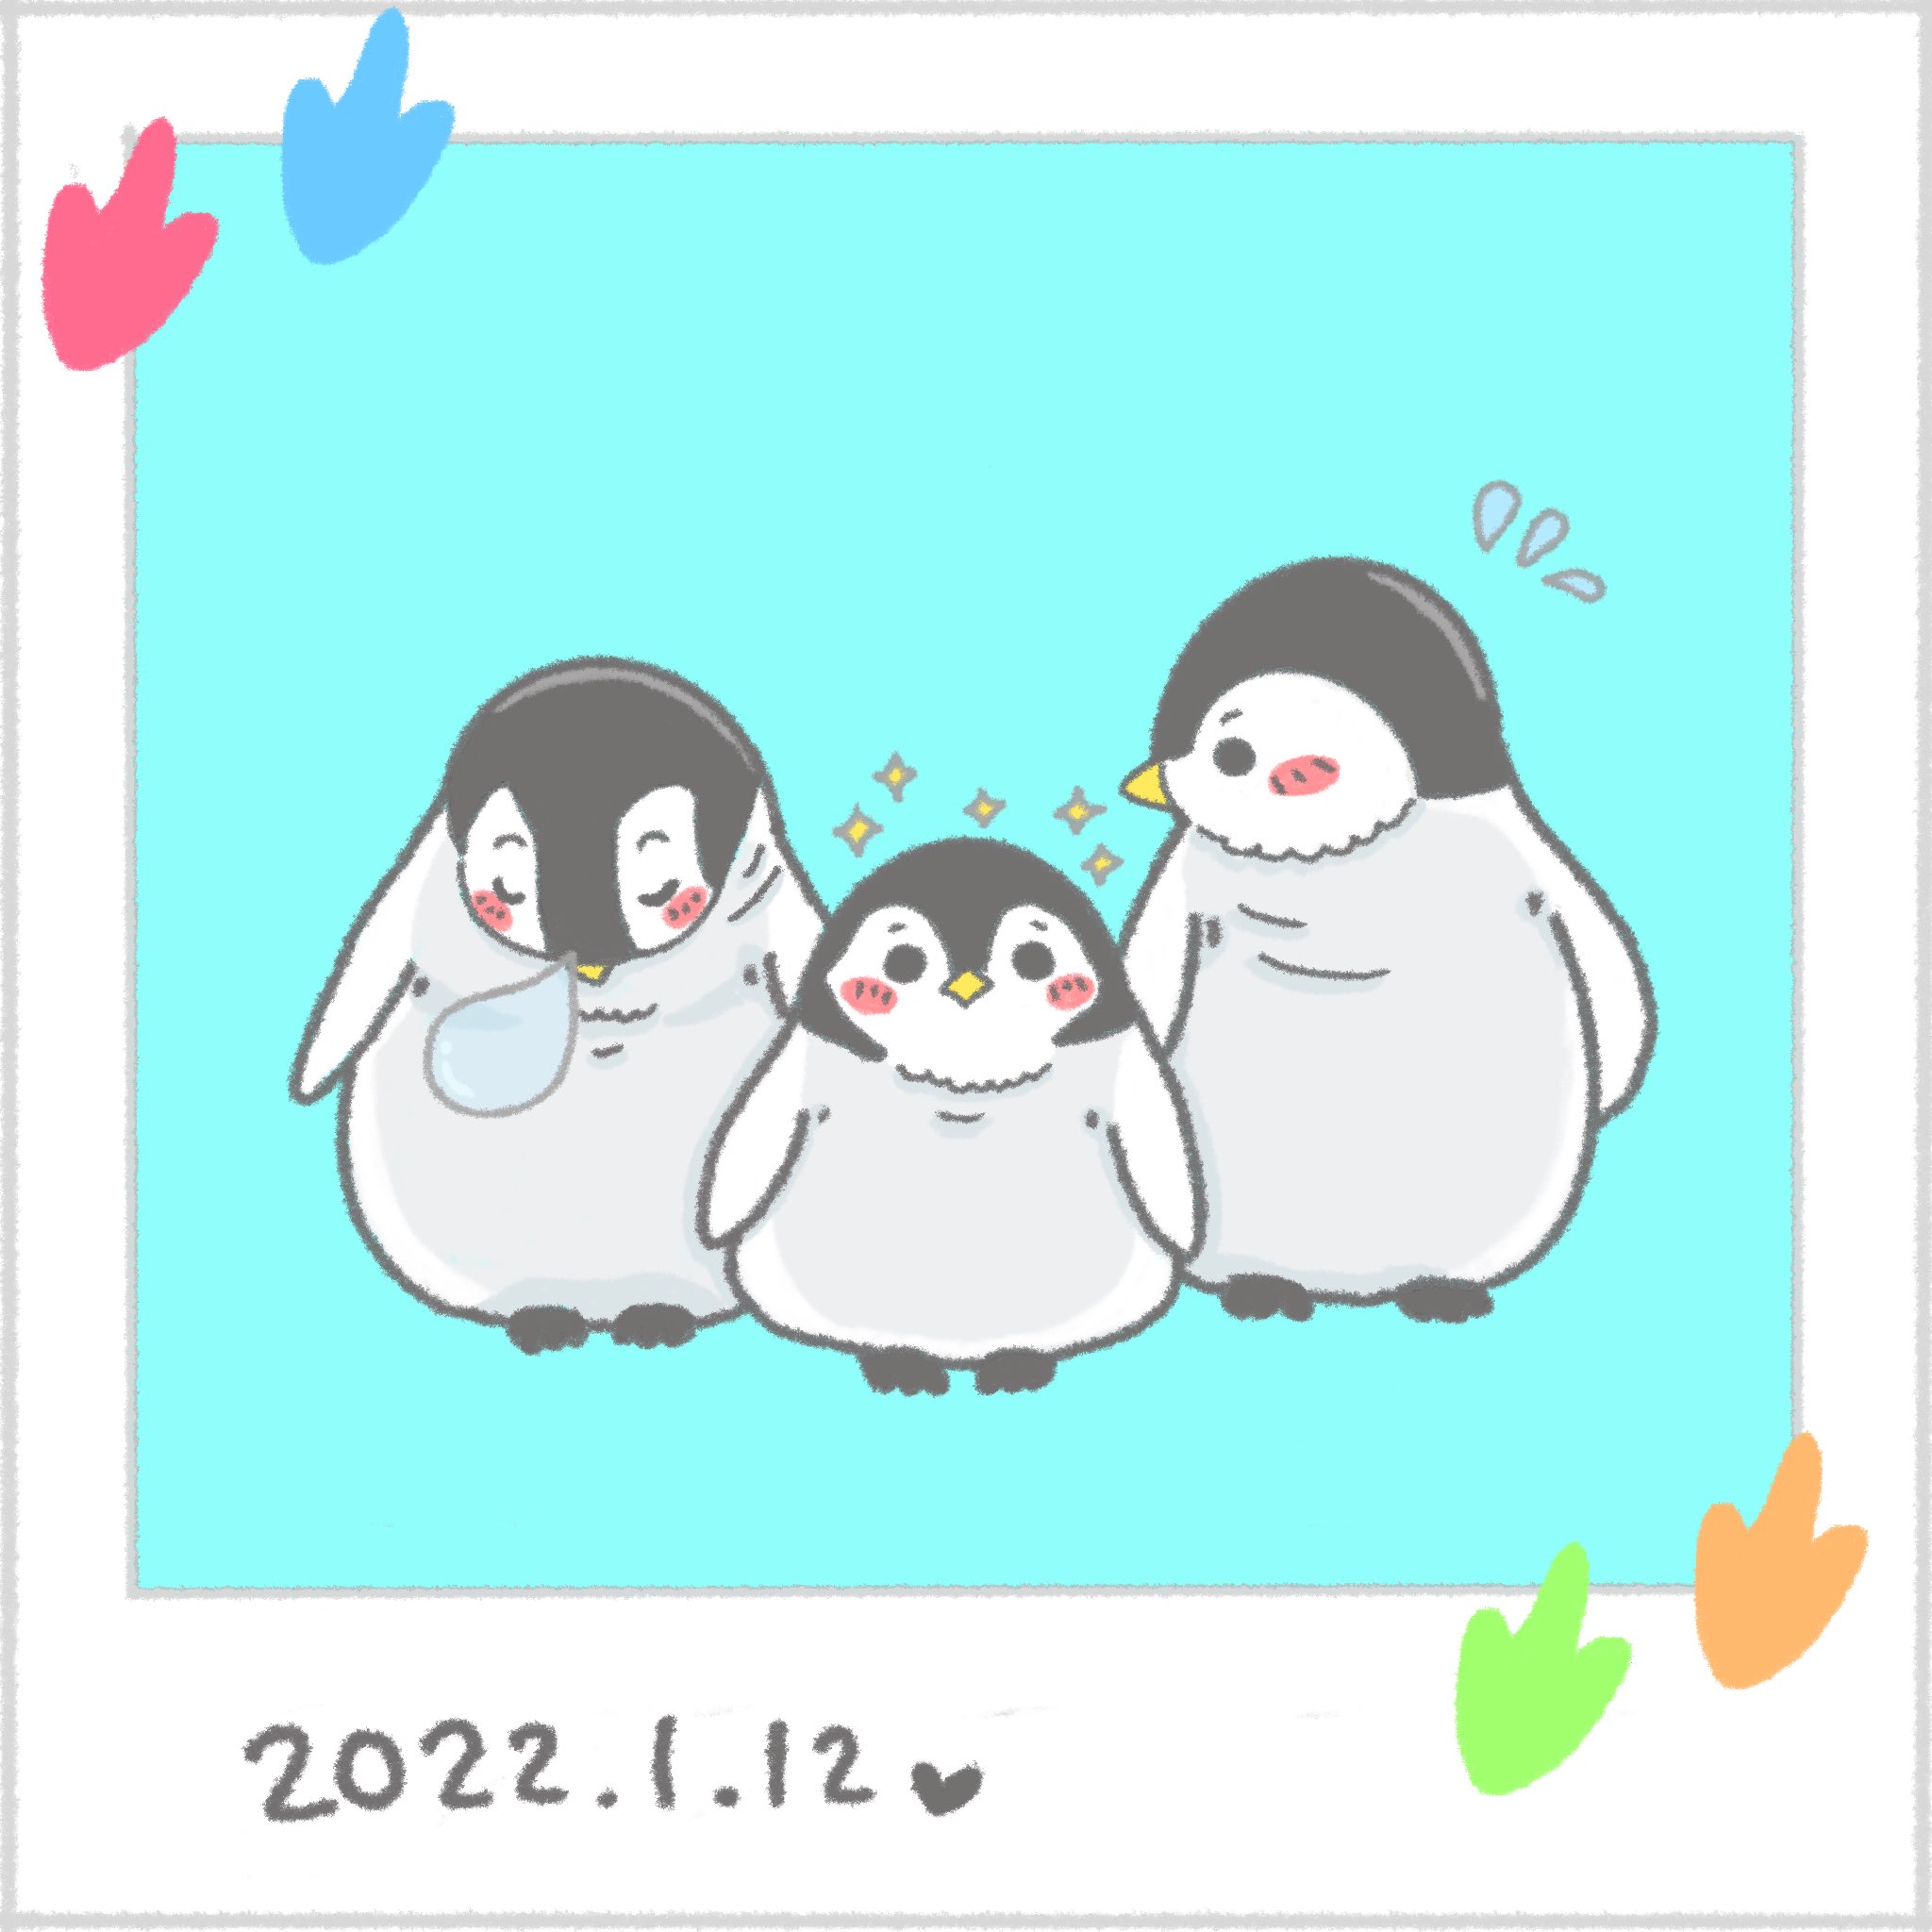 在 Twitter 上查看 Maru Ru 2525 在 22年1月12日的推文 Twitter